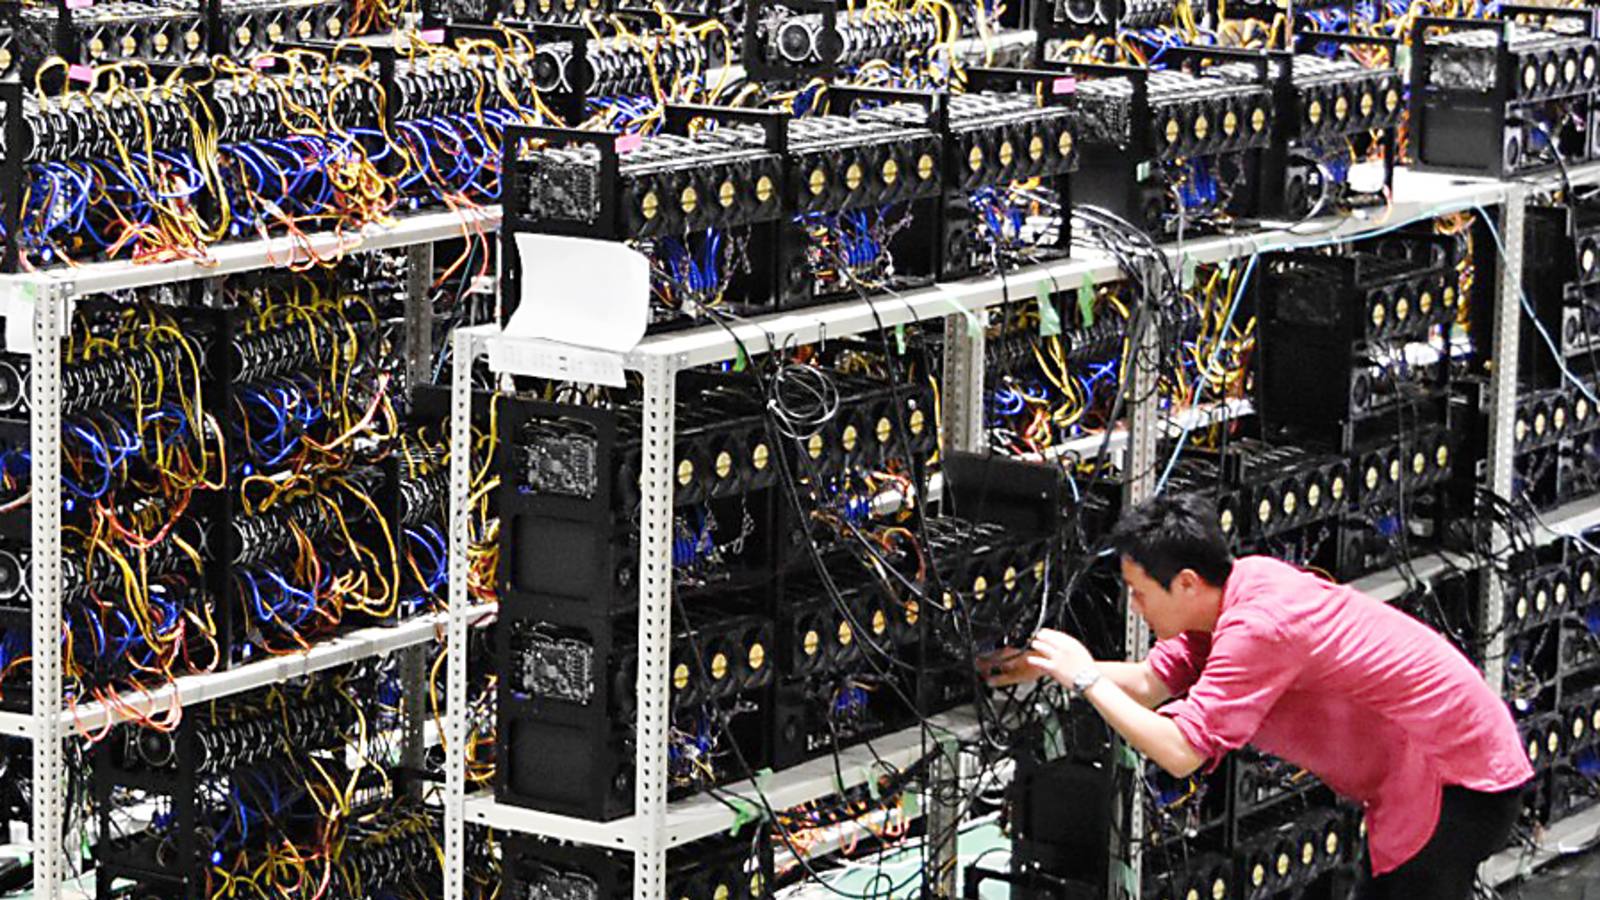 มหาวิทยาลัยเคมบริดจ์เปิดตัวเครื่องมือใหม่สำหรับติดตามข้อมูลการขุด Bitcoin  ทั่วโลก - Crypto News